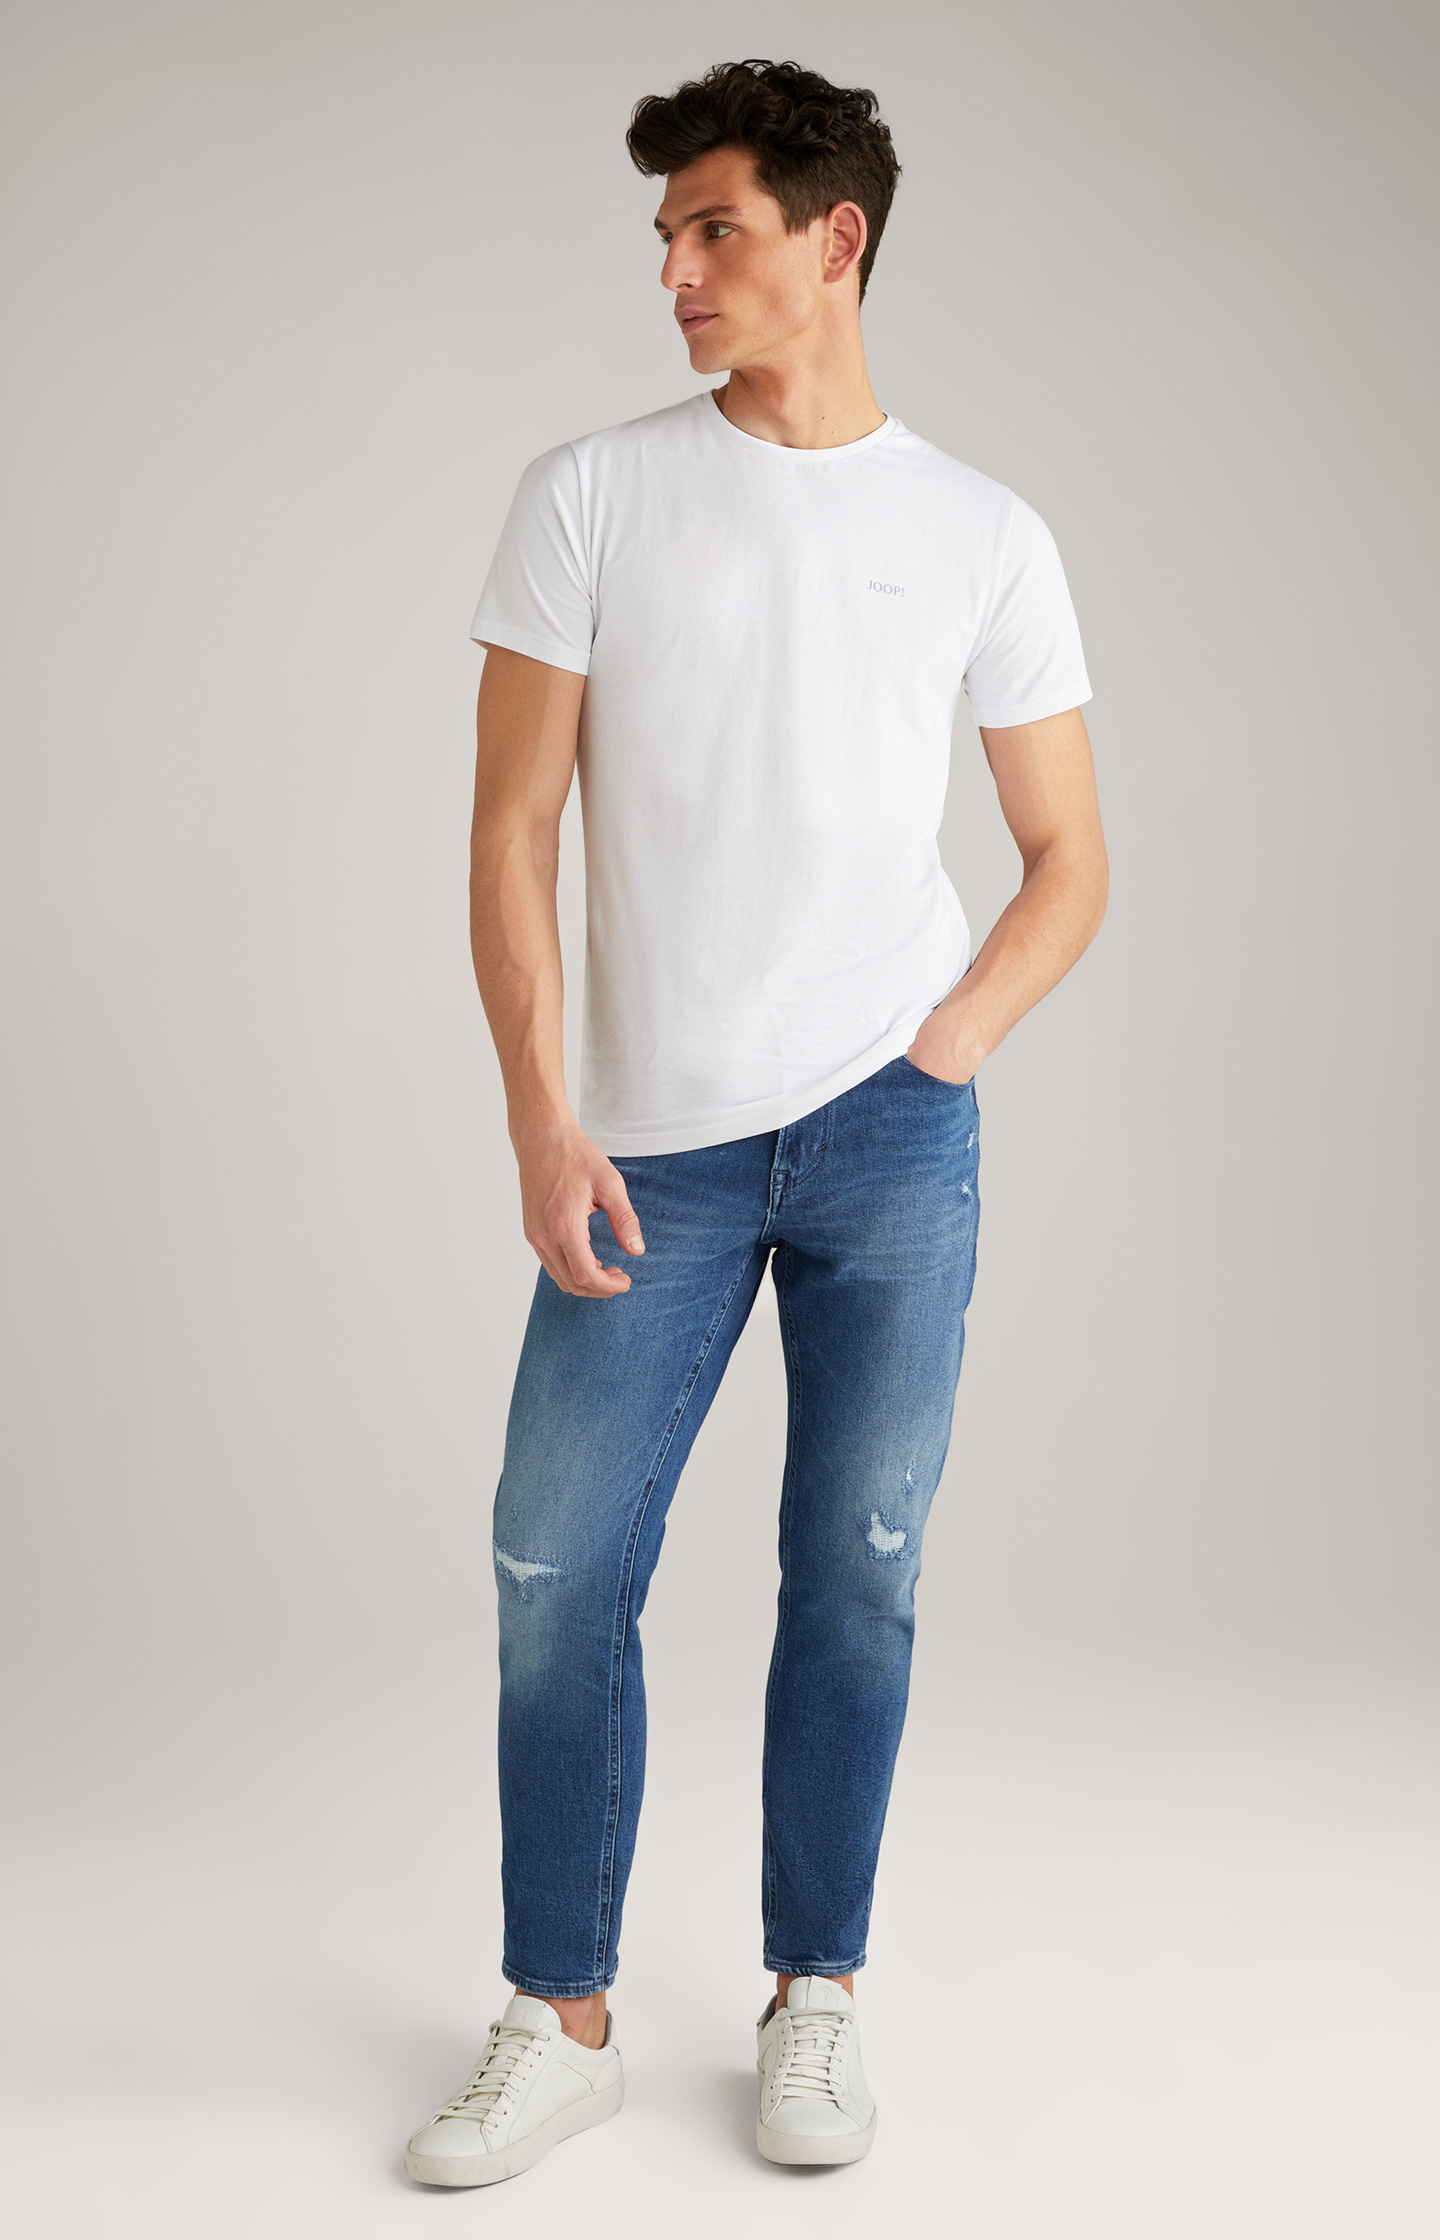 Re-Flex Jeans in in JOOP! Shop Pale Blue Online - the